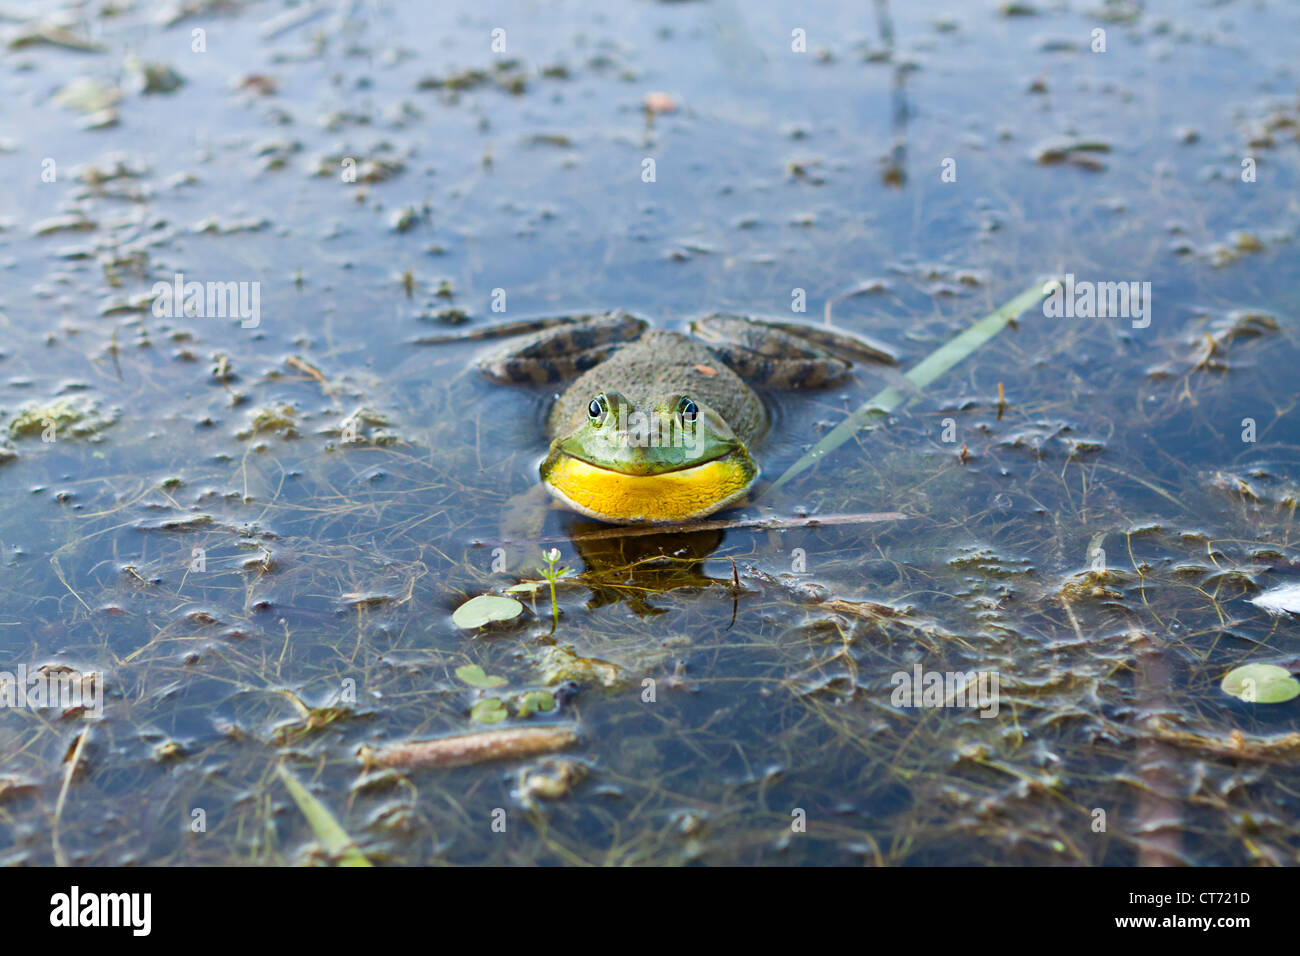 American bullfrog,Rana catesbeiana,Lithobates catesbeianus,rana,anura Foto Stock